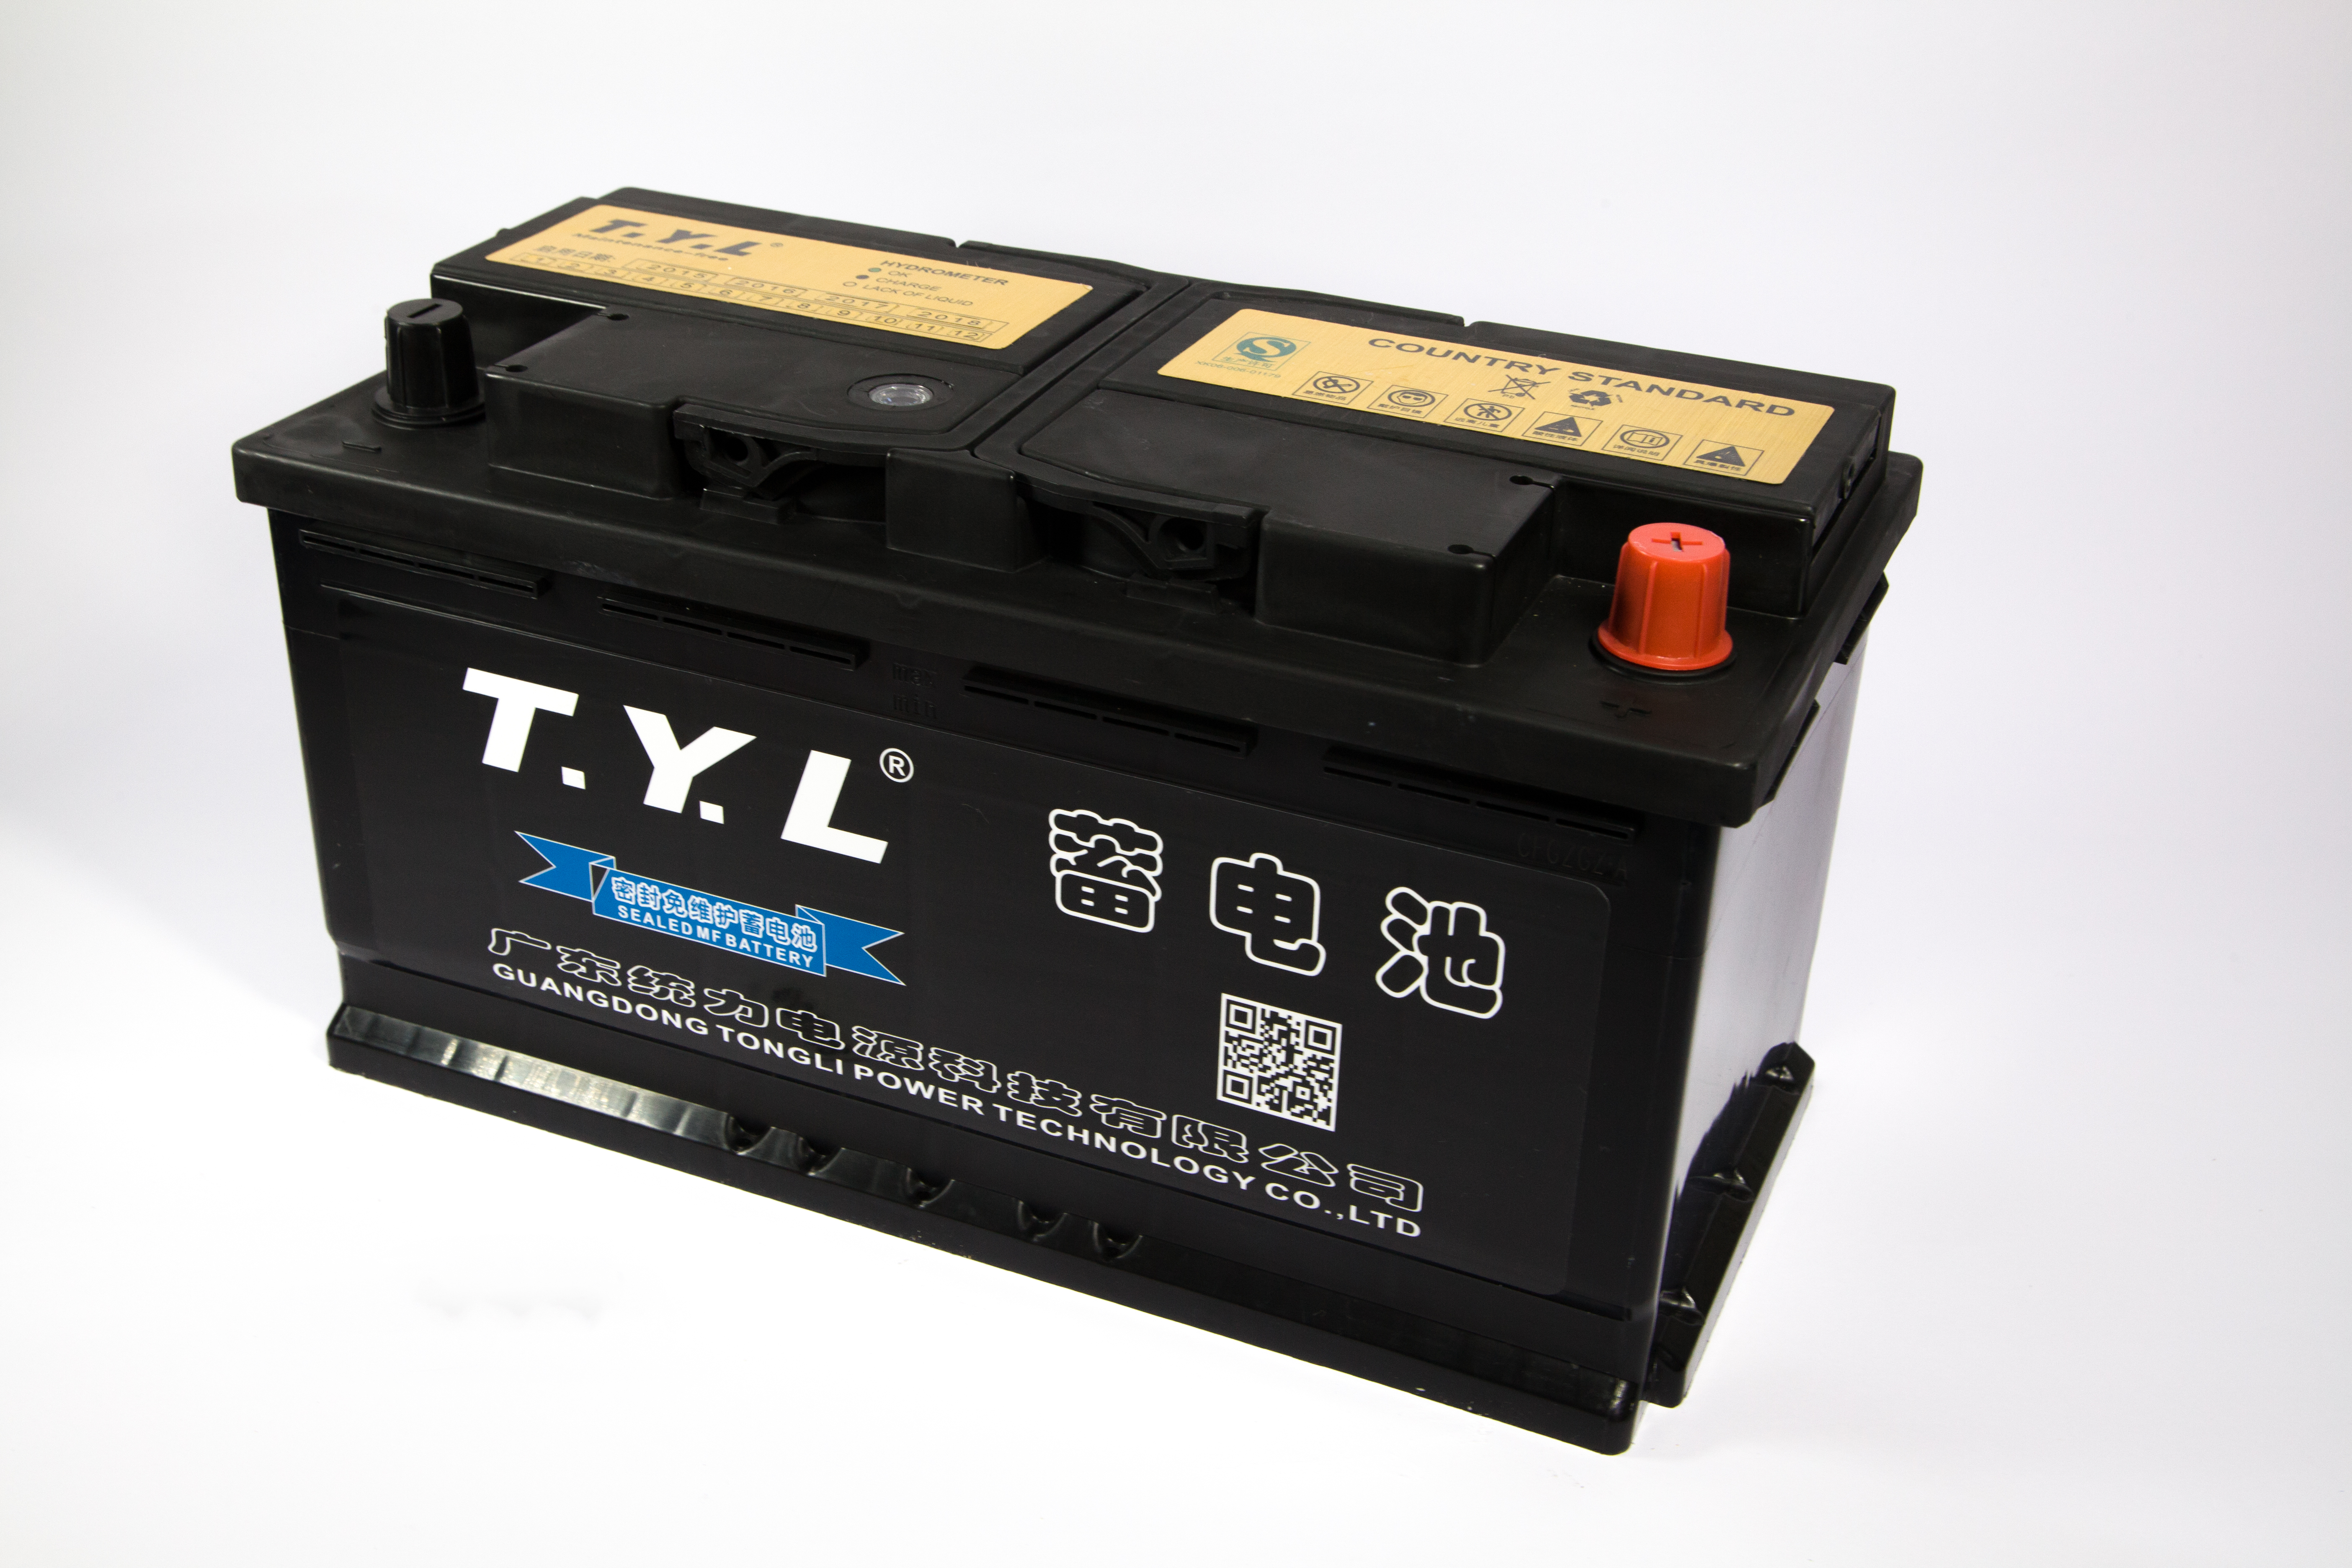 Produsent høykvalitets batteri for Kina bilbatteri 12v75ah smf 75D31L